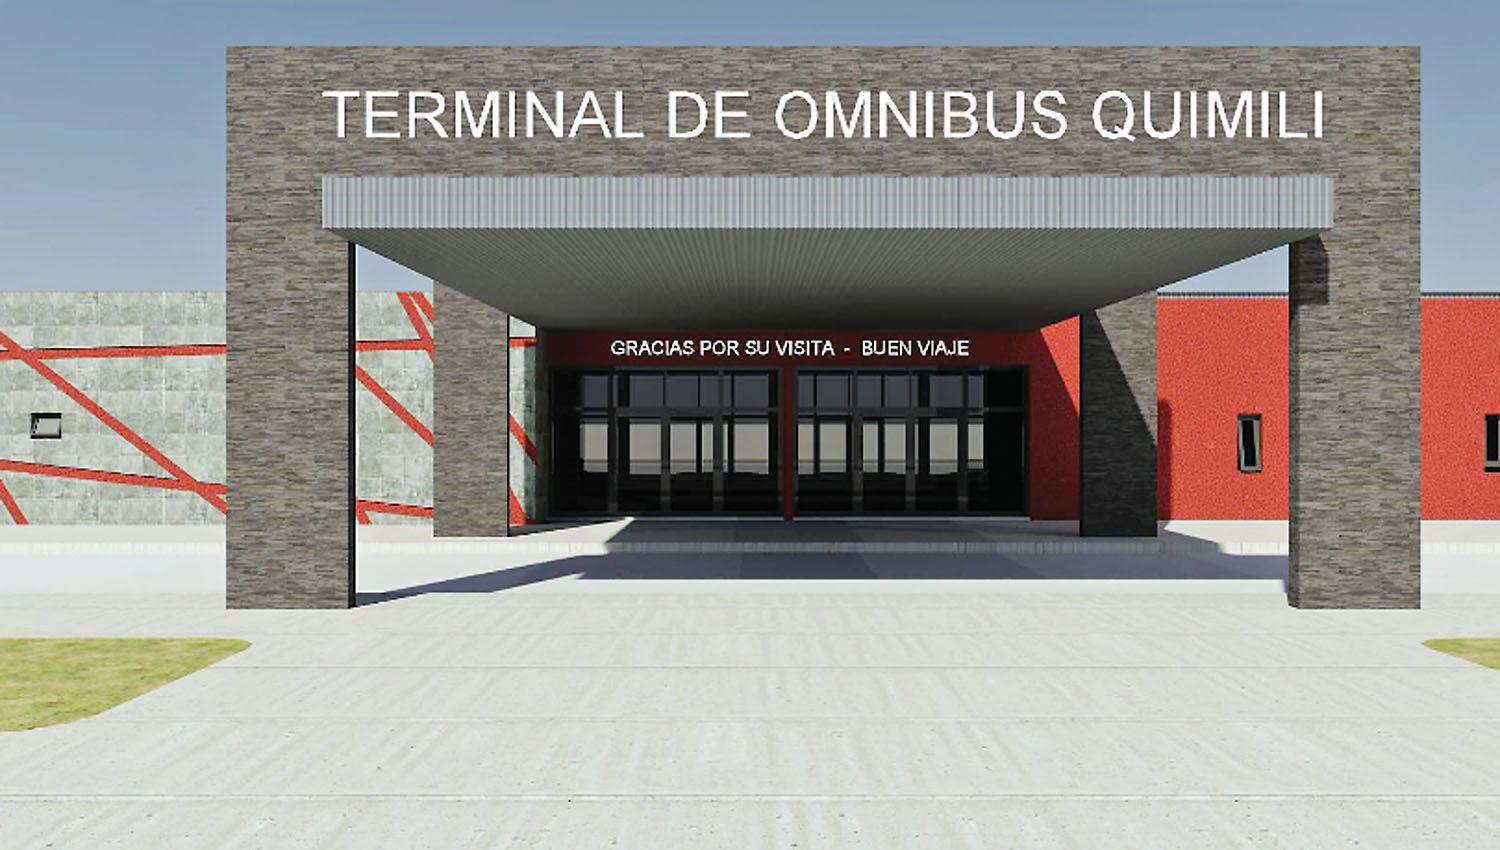 Satisfaccioacuten en Quimiliacute por la futura construccioacuten de la terminal de oacutemnibus